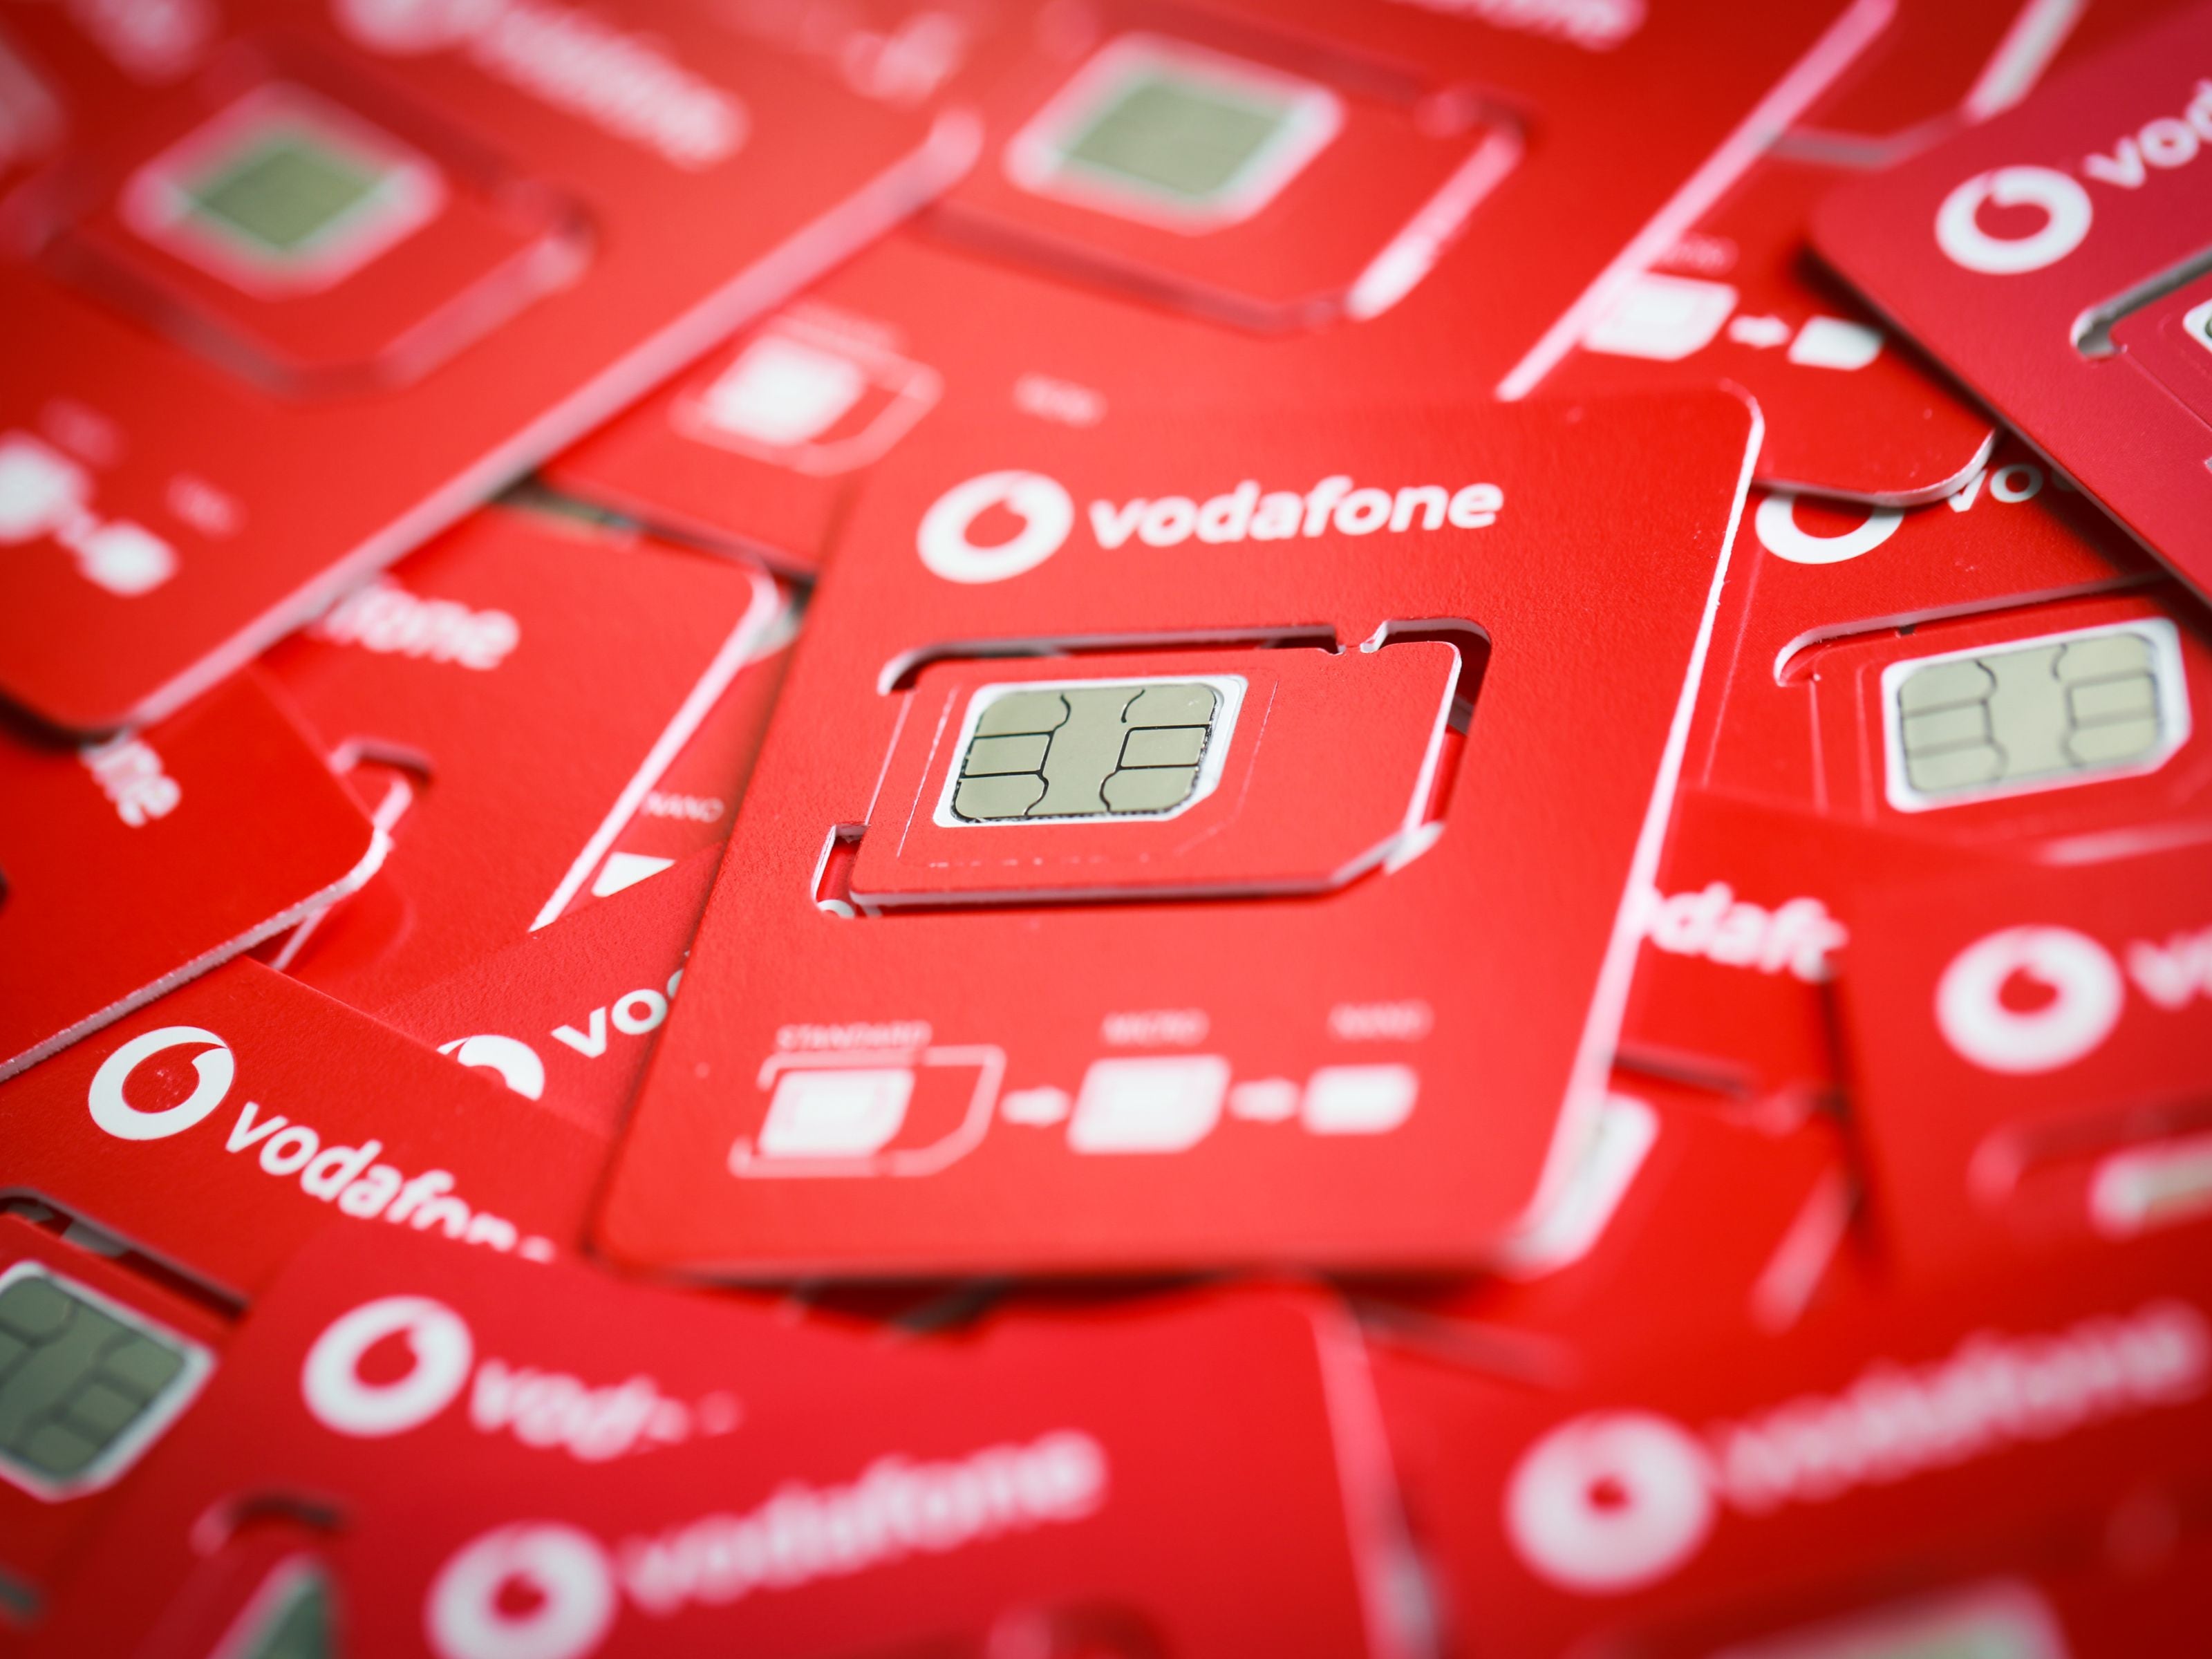 #Vodafone: Ein Vertrag für zehn Handys